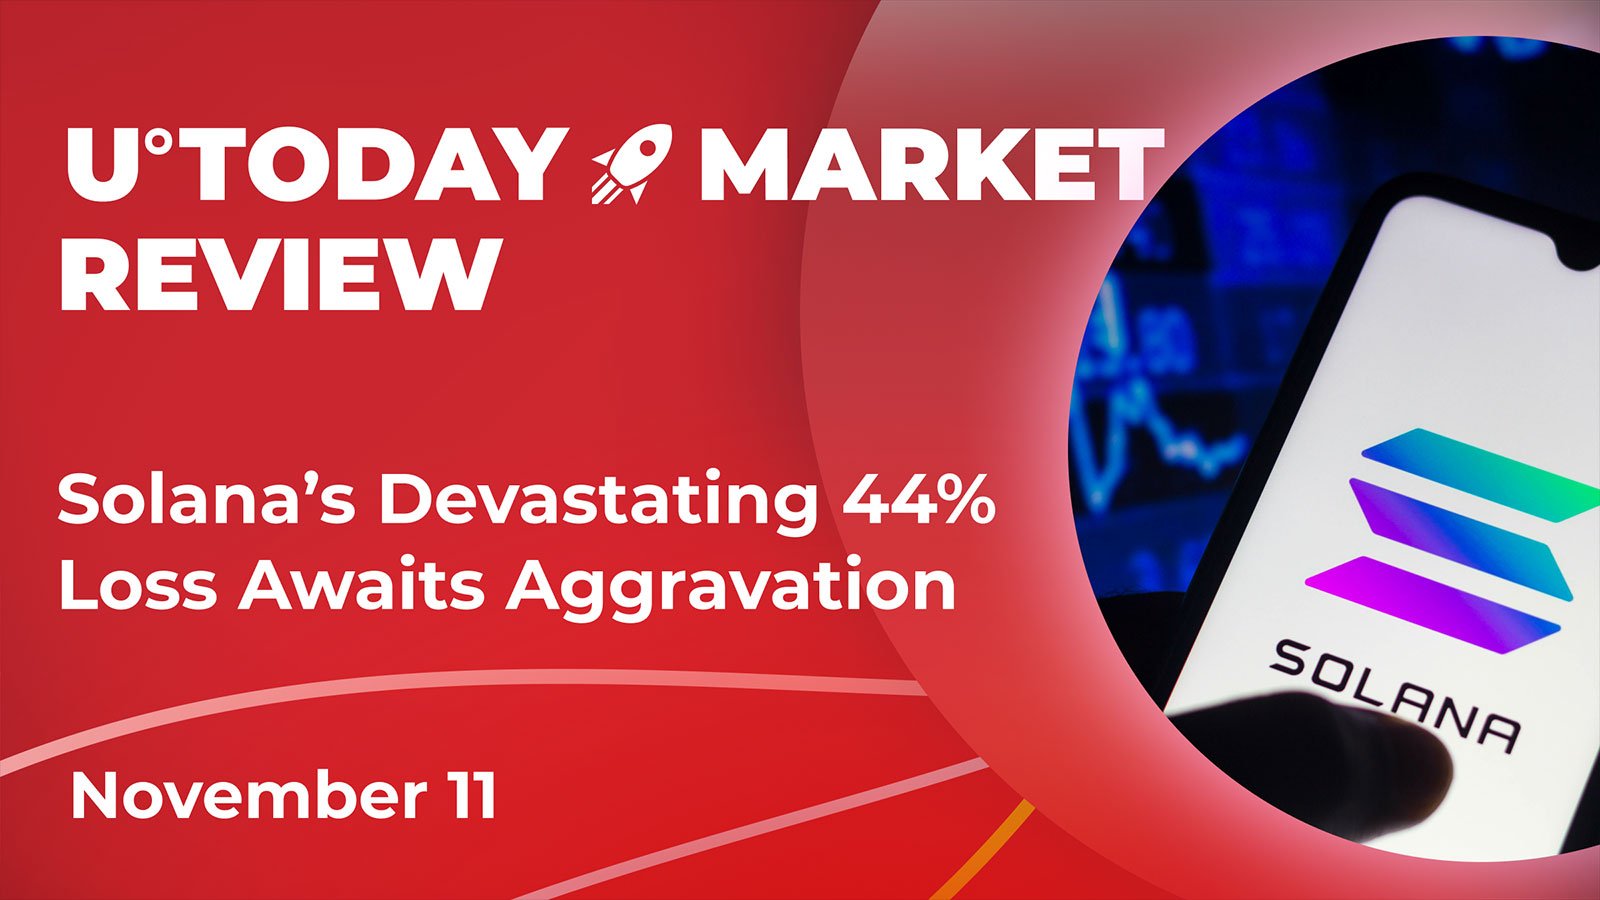 Solana's Devastating 44% Loss Awaits Aggravation: Crypto Market Review, November 11